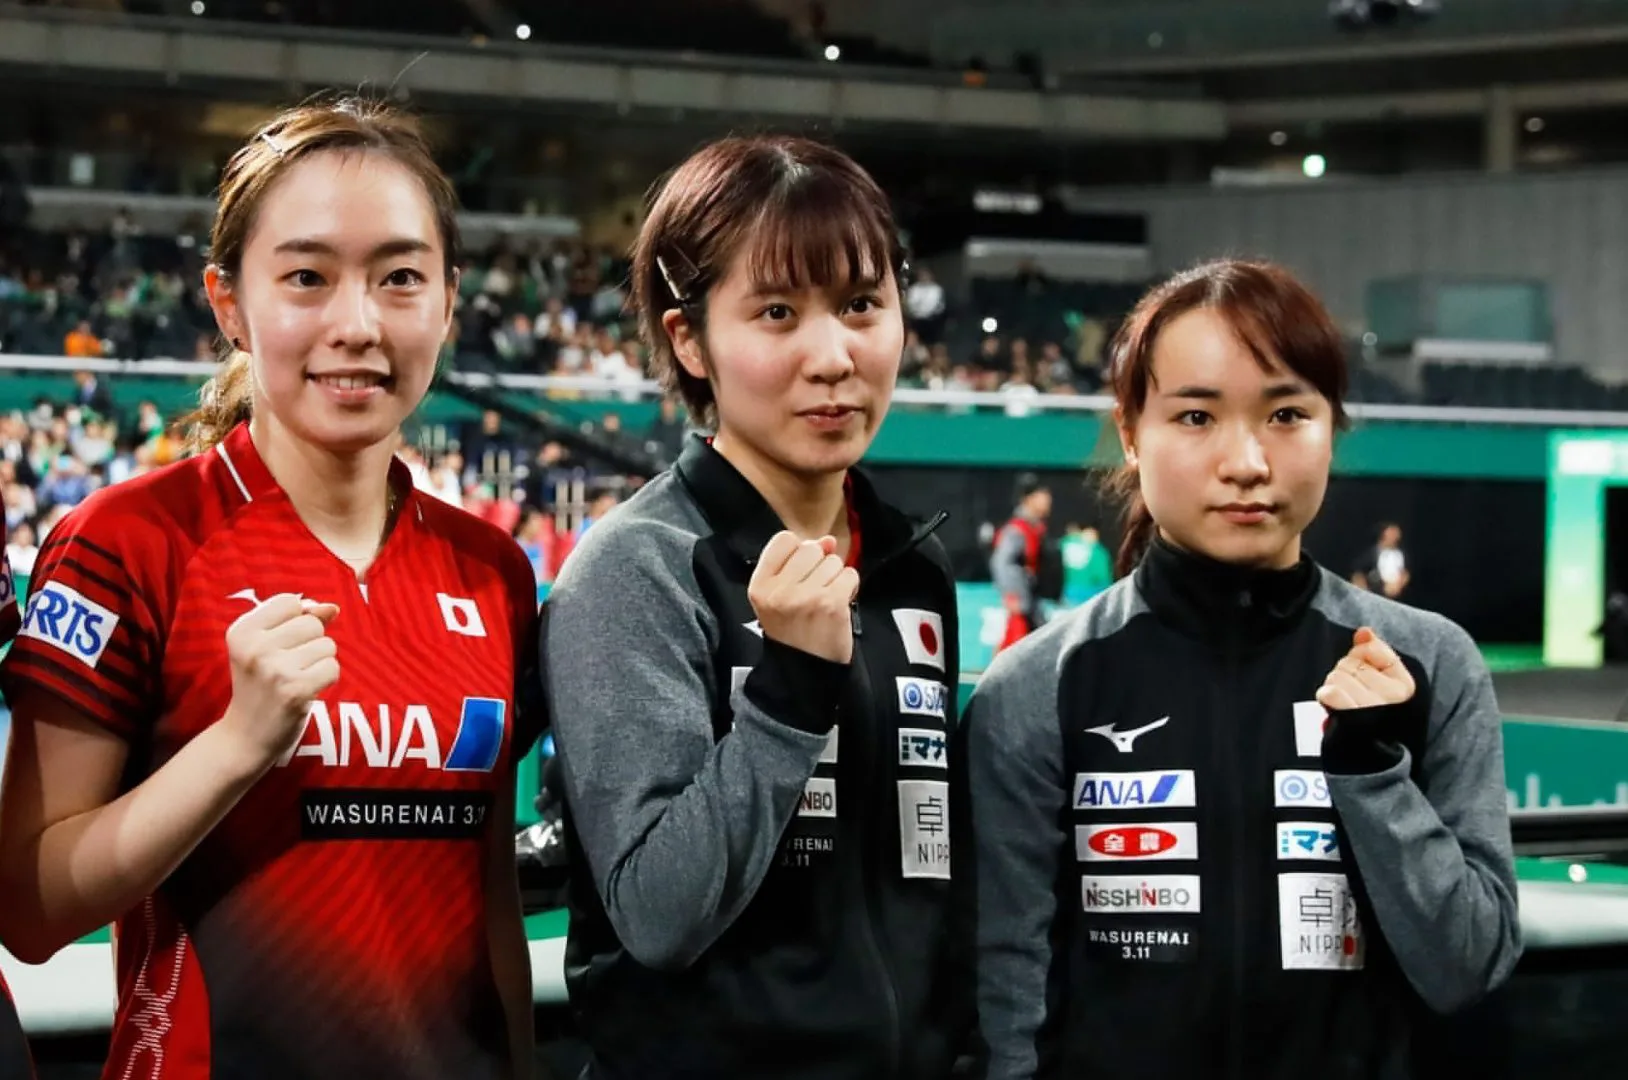 卓球東京五輪代表 女子3人目は平野美宇 伊藤美誠 石川佳純と悲願の金メダルへ 卓球メディア Rallys ラリーズ